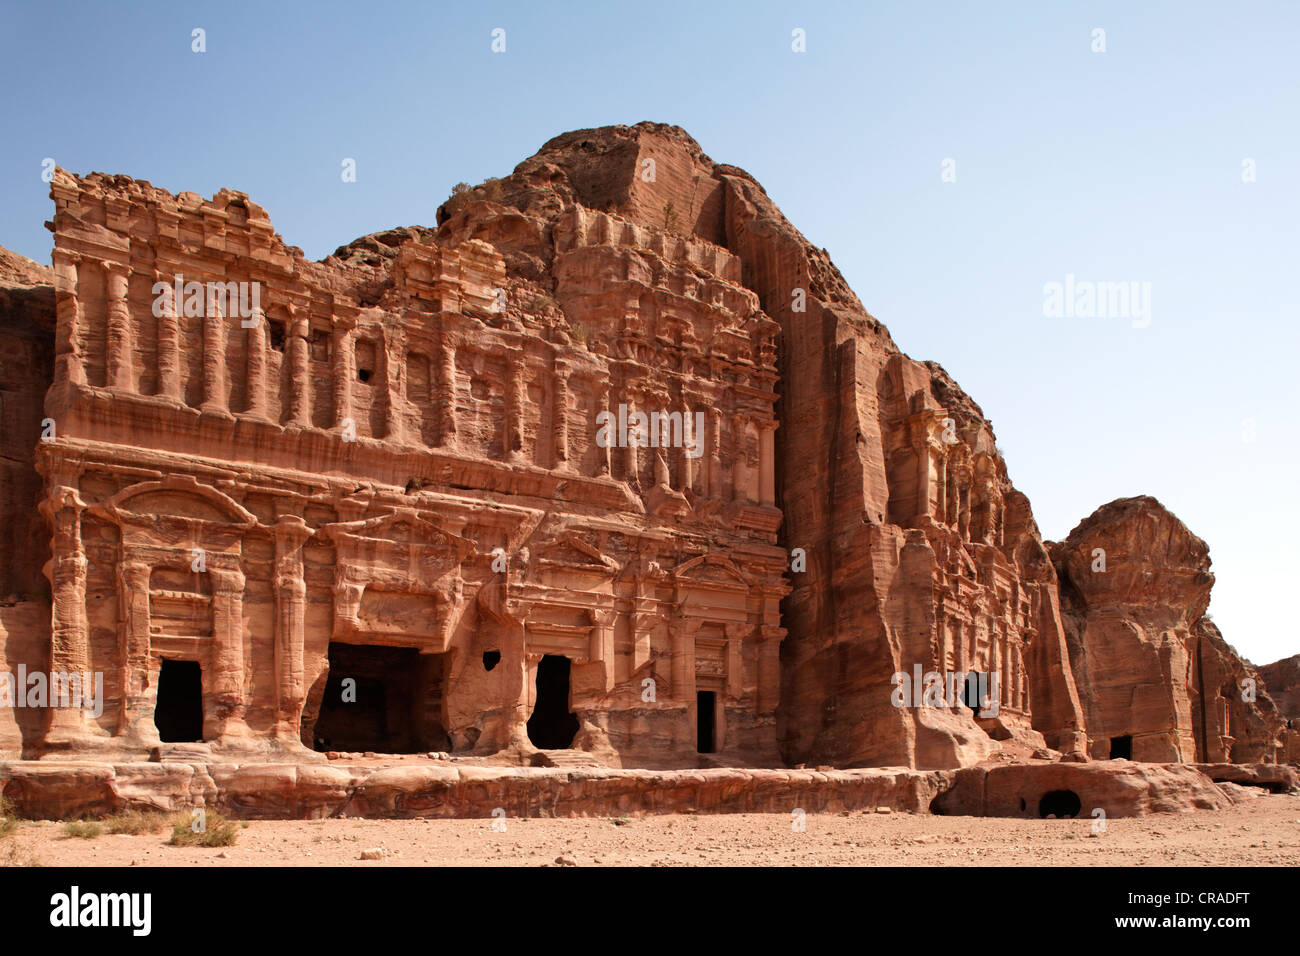 Tomba del palazzo, con lesene e colonne impegnato, Petra, la città capitale del Nabataeans, rock city, UNESCO sito Hertage Foto Stock